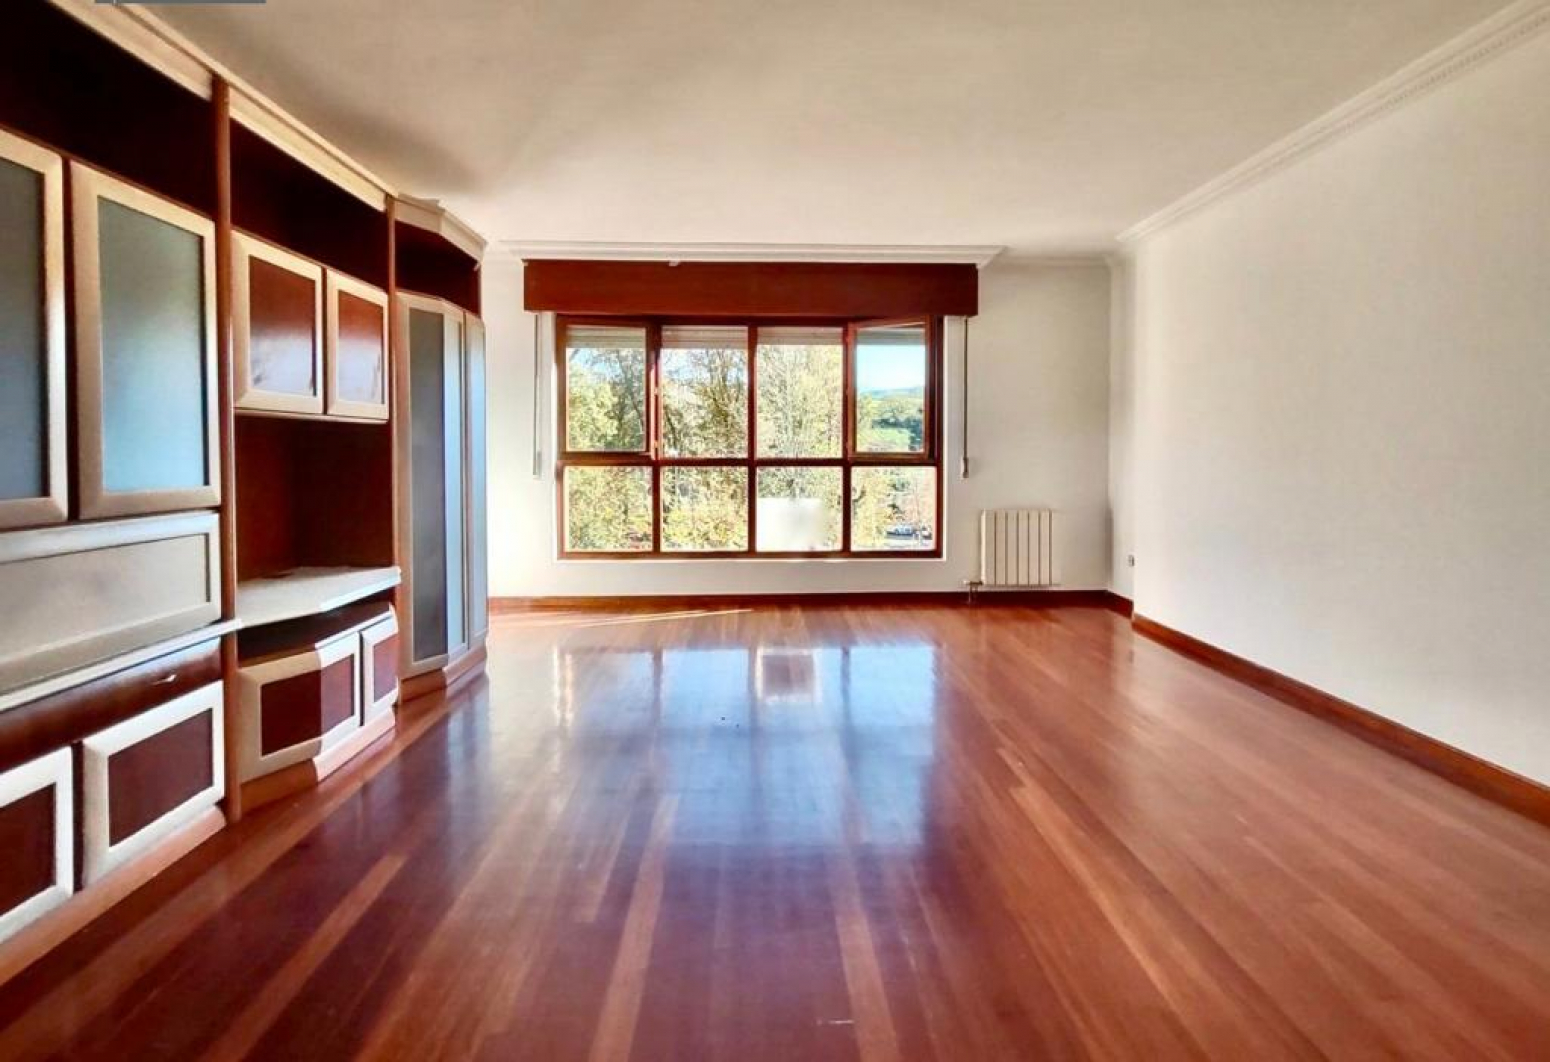 Amplio piso en Sarón, con 3 habitaciones, terraza, 2 plazas de garaje y 2 trasteros.